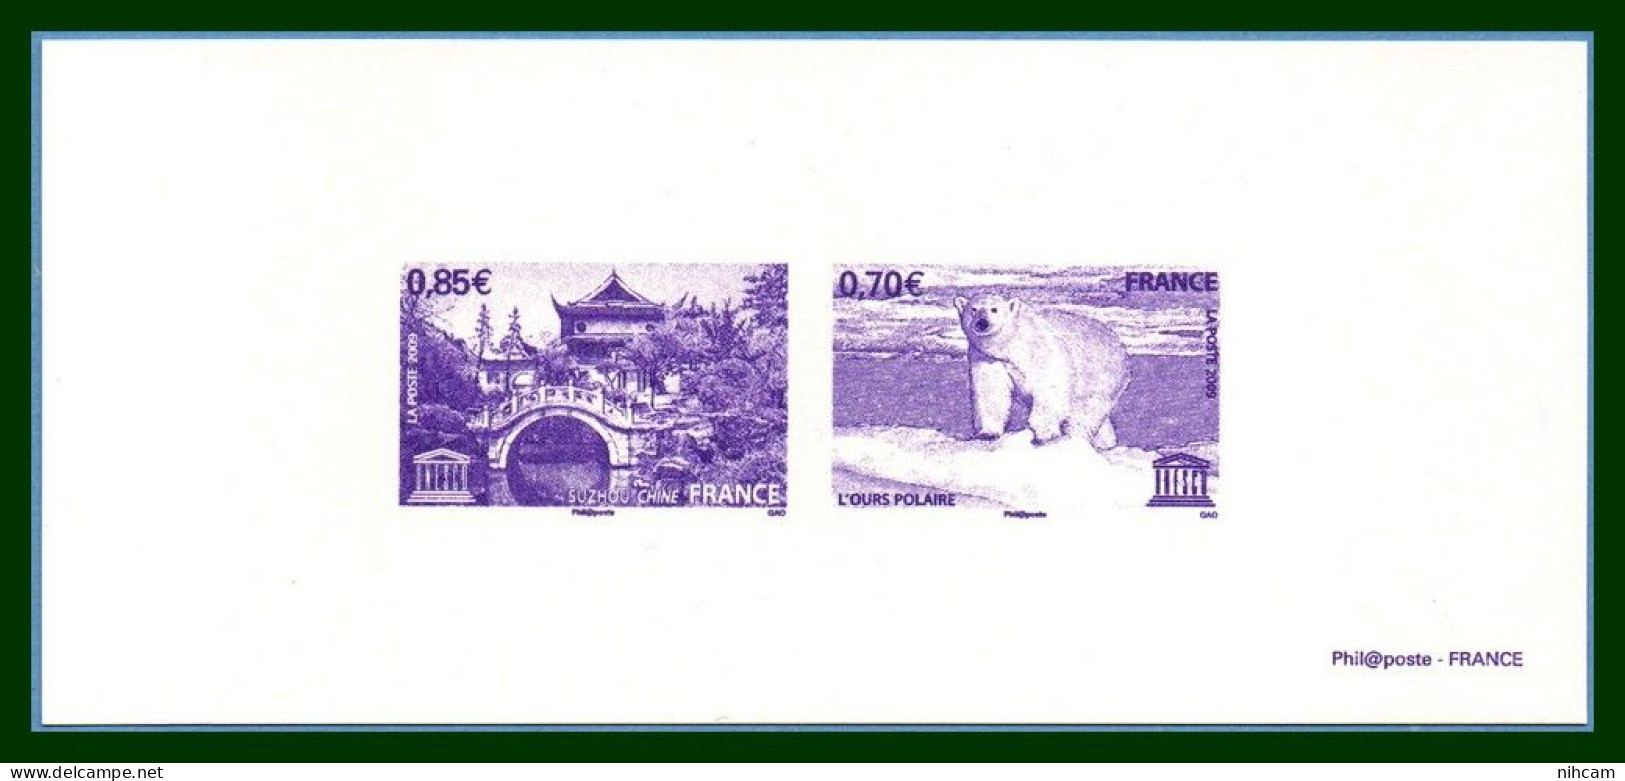 GRAVURE S 144 145 UNESCO 2009 Ours Polaire Polar Bear & Suzhou Chine China - Préservation Des Régions Polaires & Glaciers